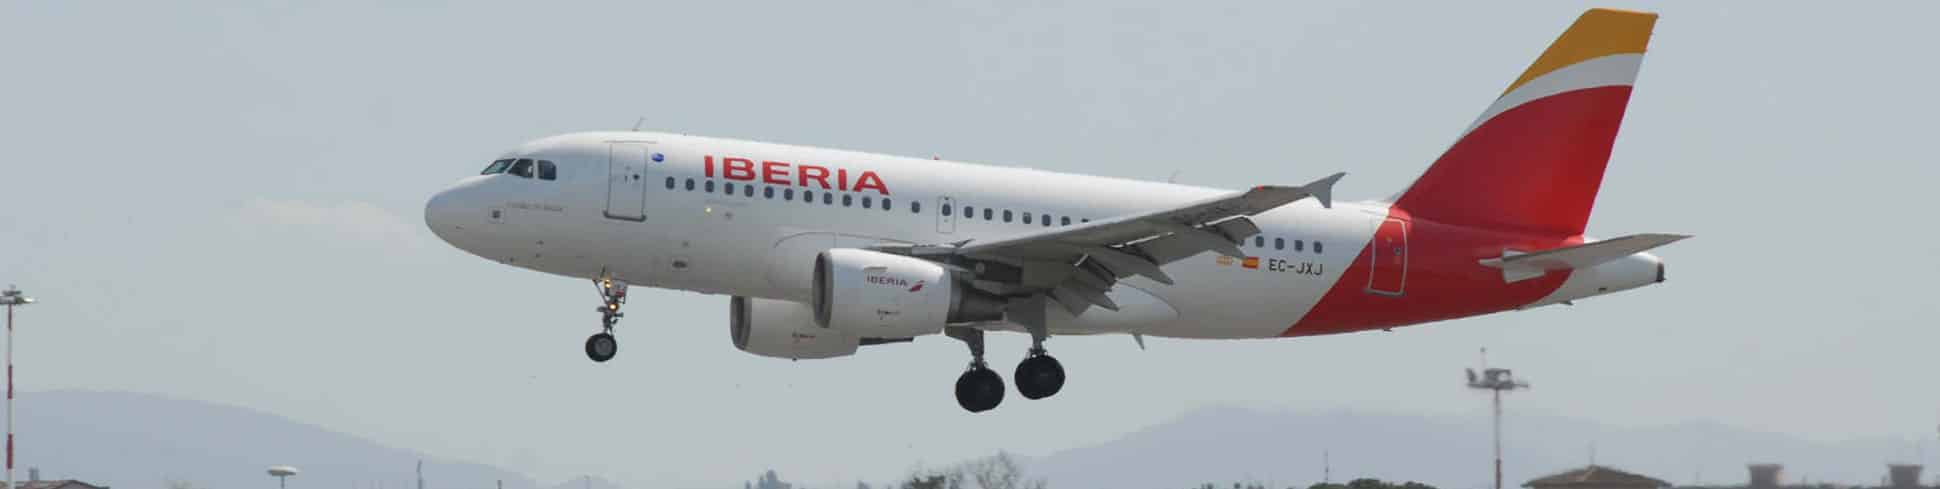 Airbus A319 von Iberia